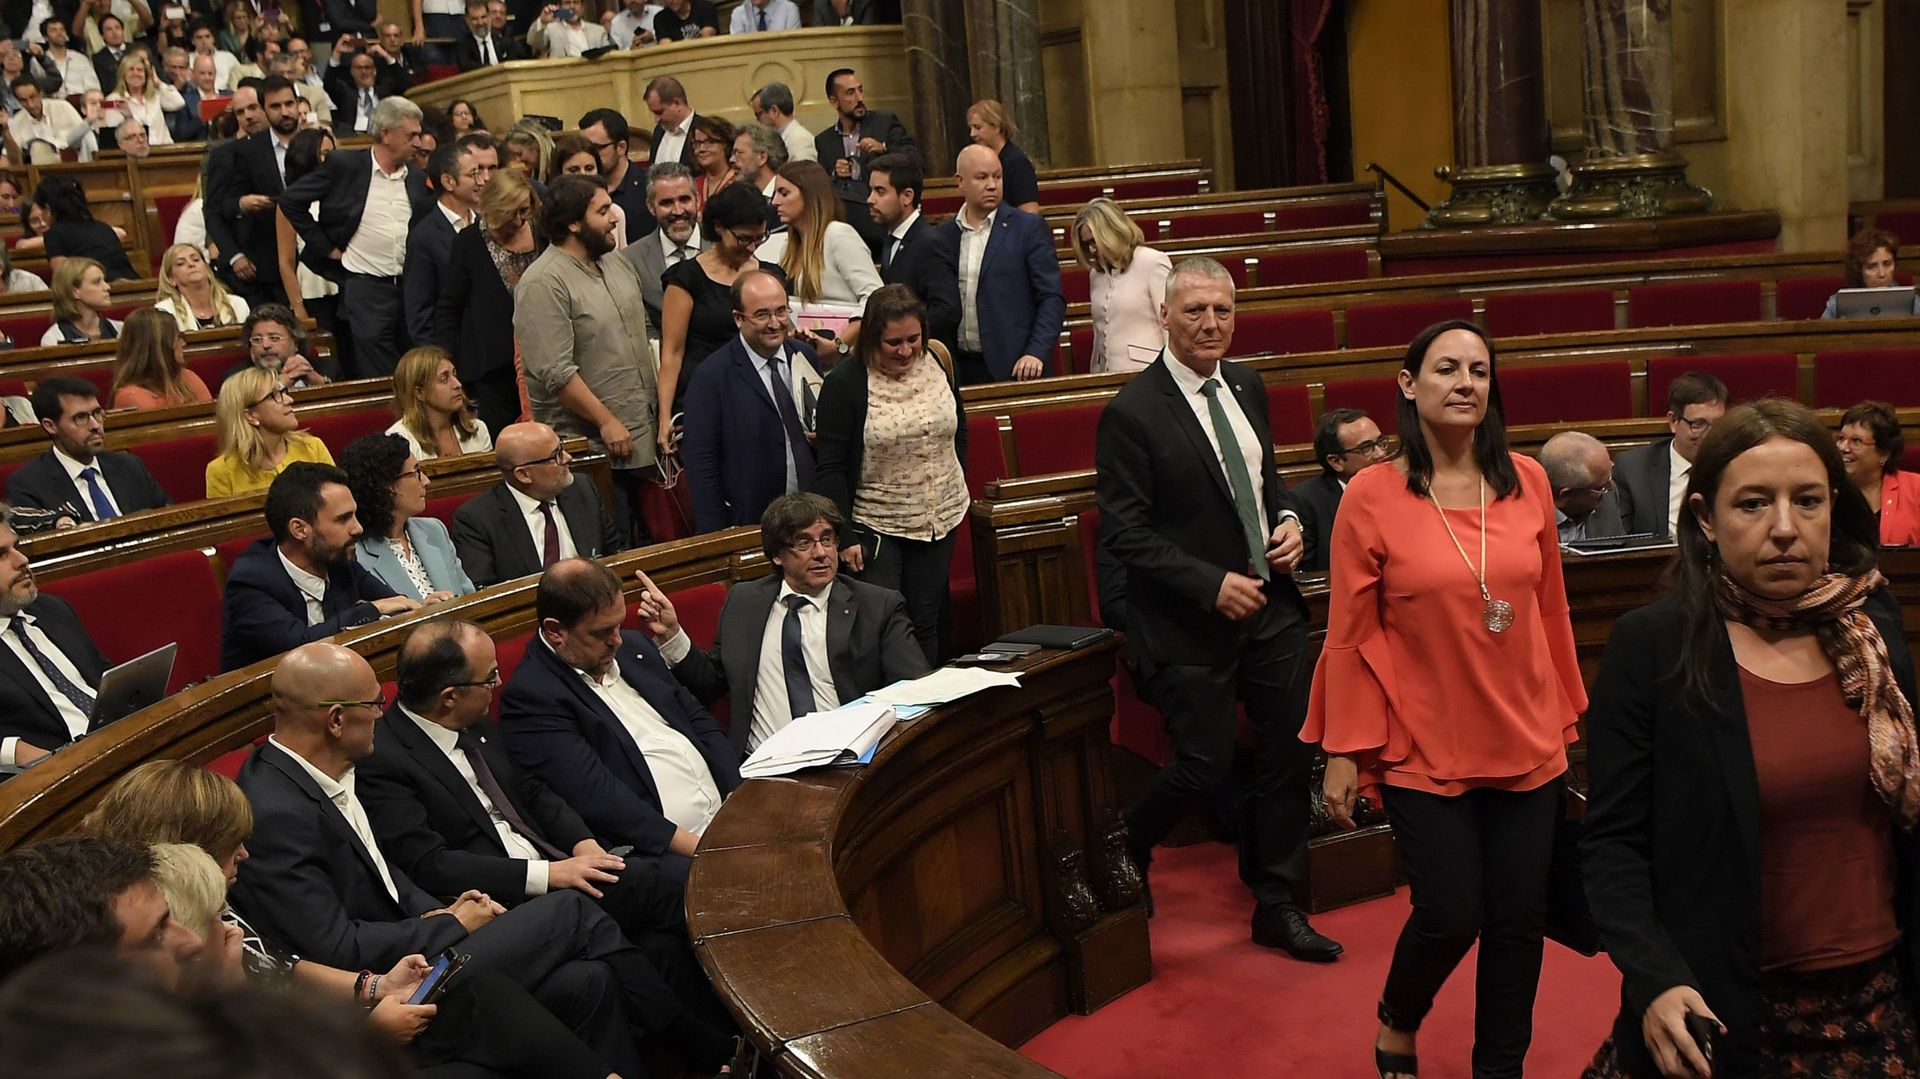 Les élus de l'opposition ont quitté l'hémicycle pour ne pas participer au vote, laissant derrière eux des drapeaux catalans et espagnols côte à côte.